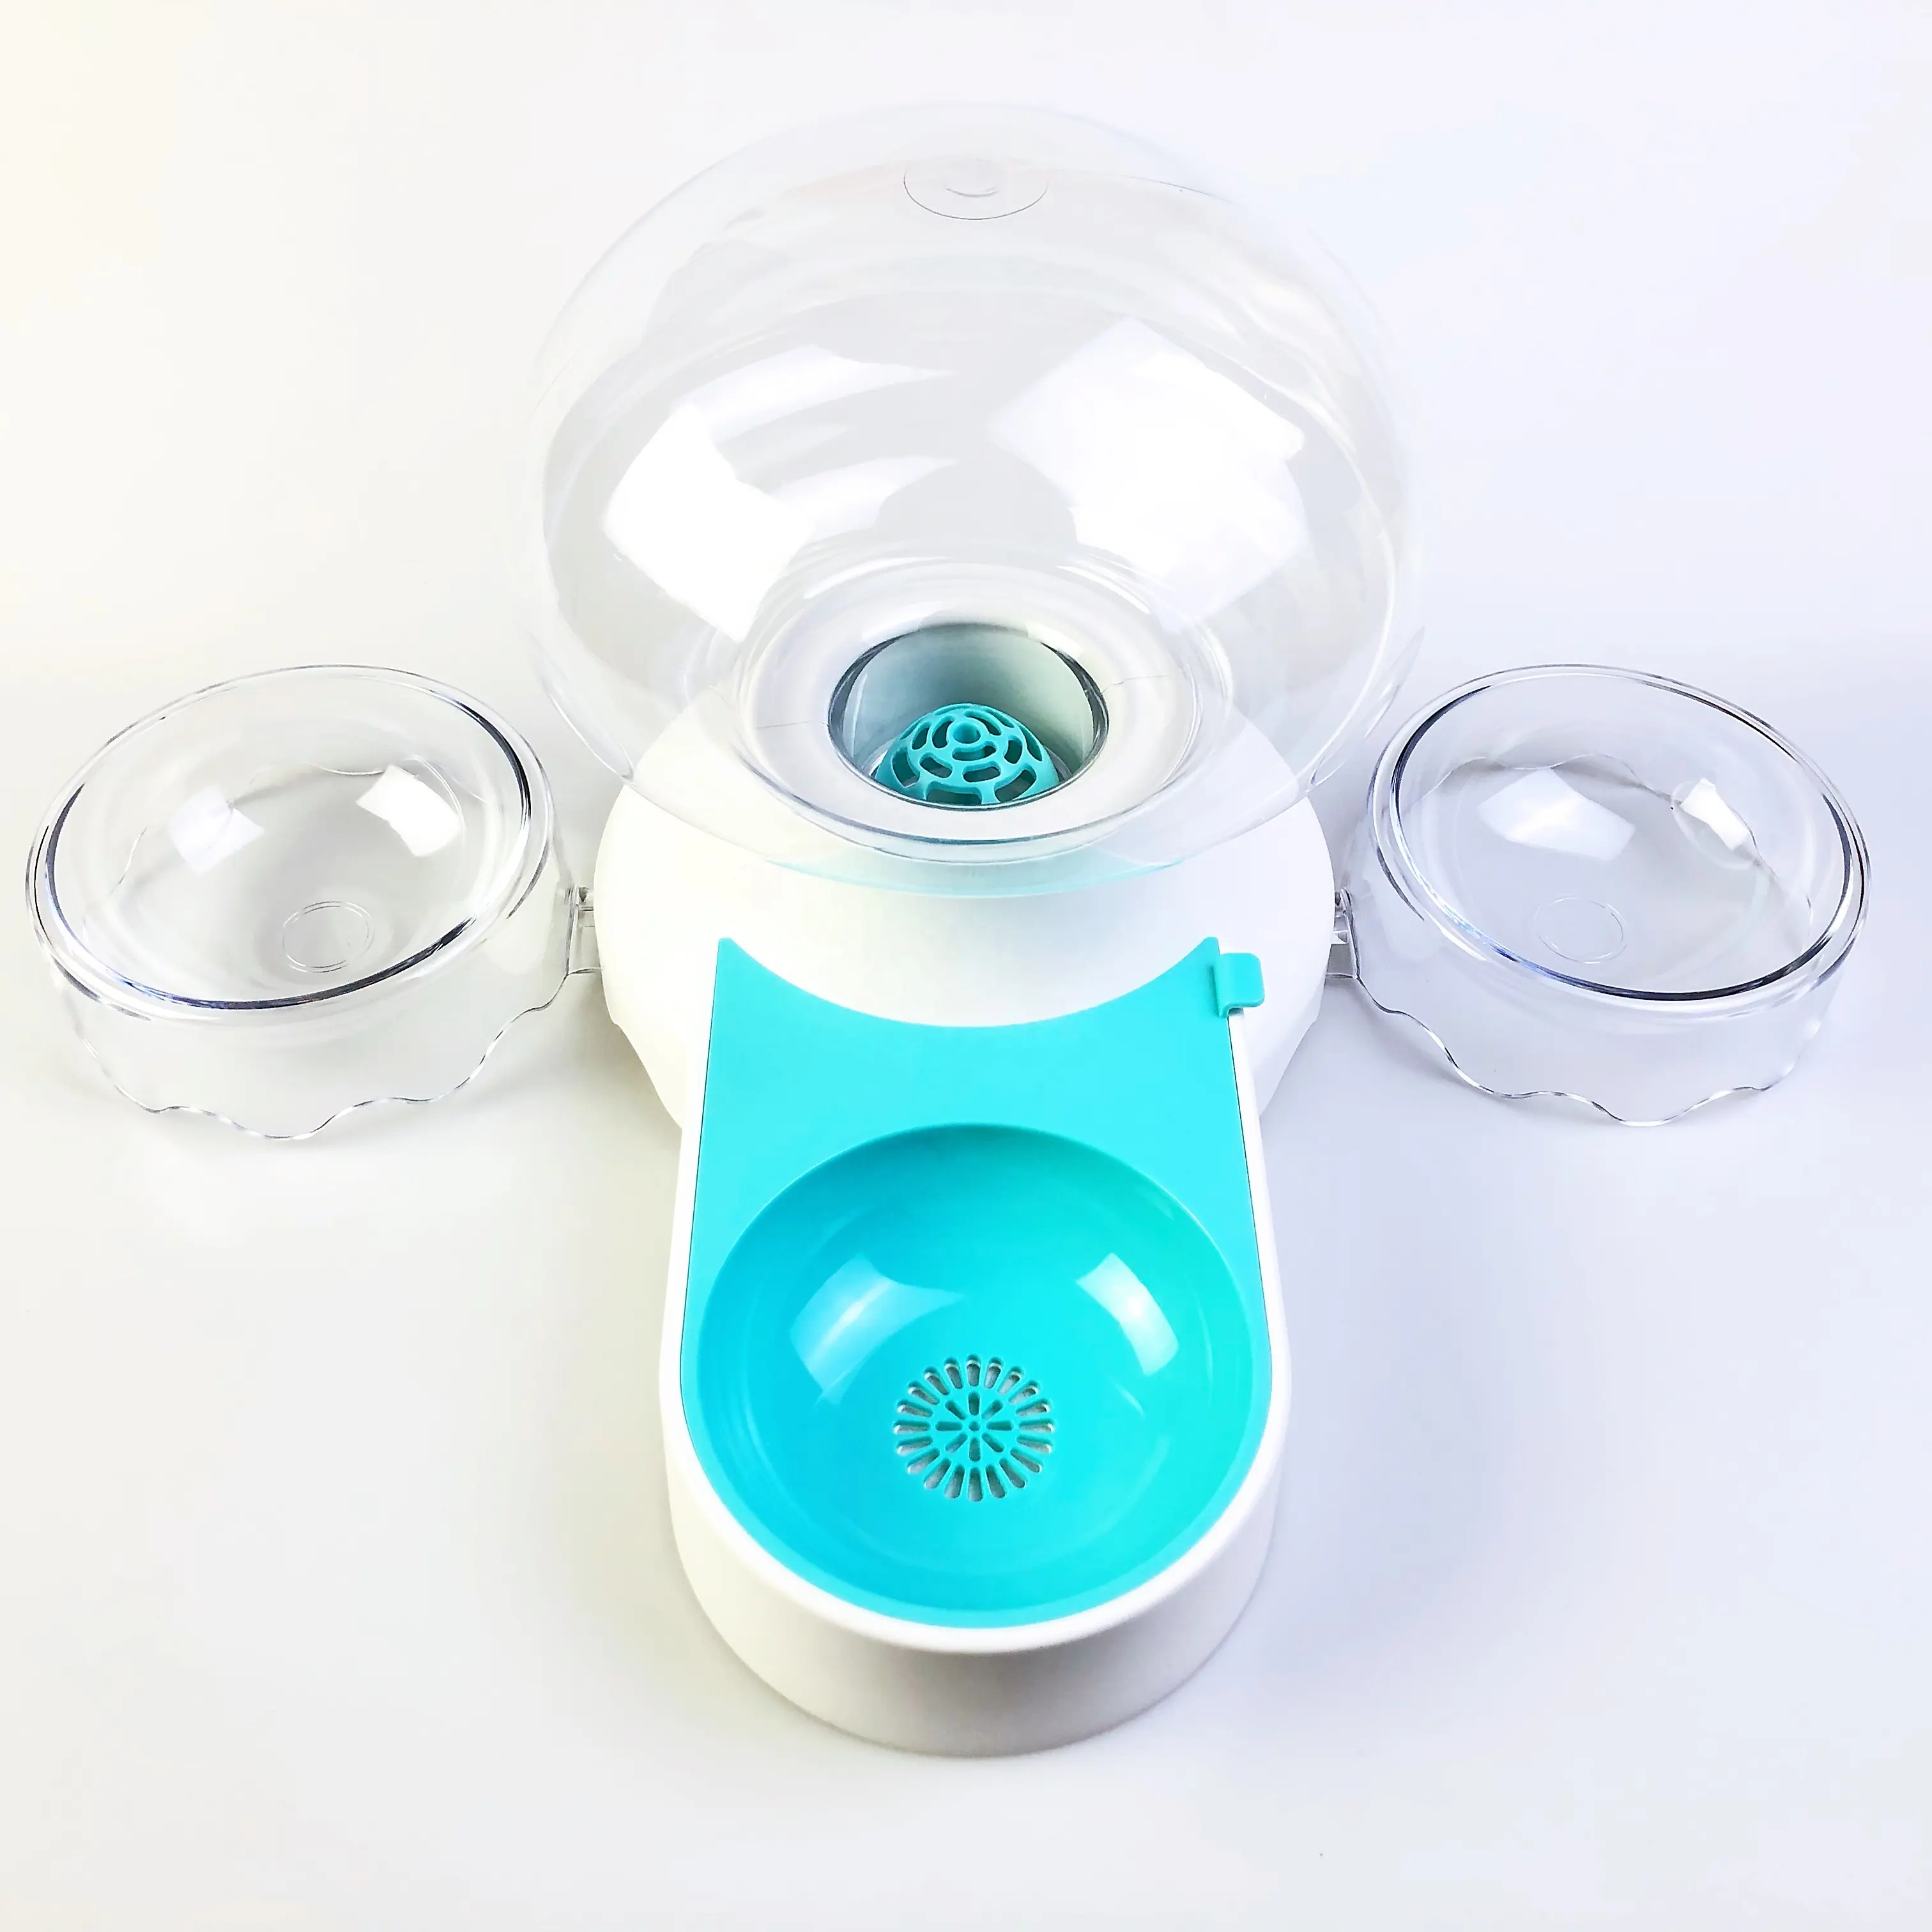 Automatischer Wassersp ender Intelligenter Multifunktions-Springbrunnen-Wassersp ender Food Feeder Dog Bowl